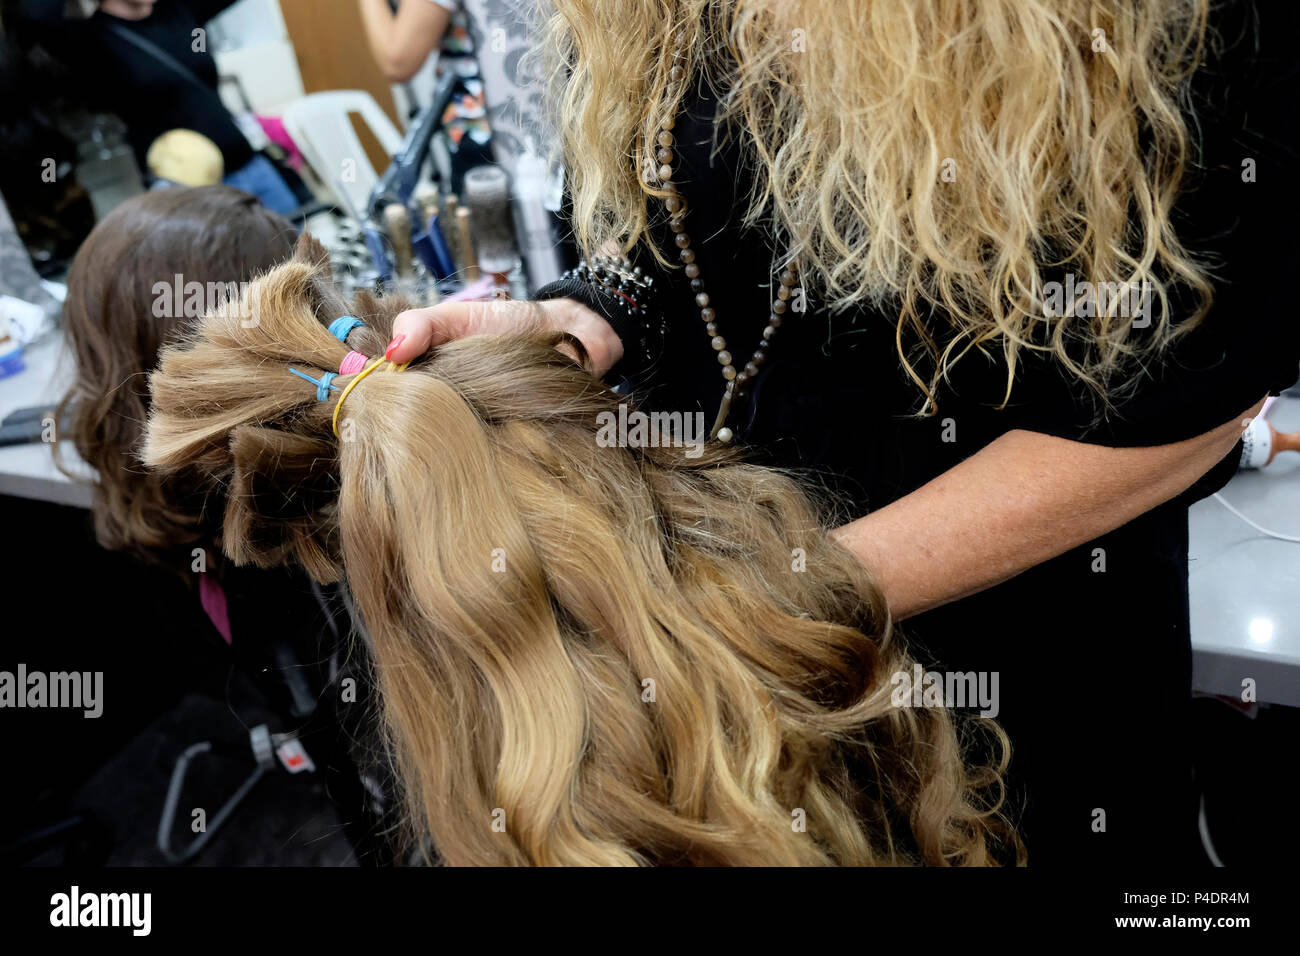 Bracha Keynan, produttore di parrucche e stilista di Haredi, mostra la collezione di parrucche per capelli umani nel suo negozio nella città di Bnei Brak o bene Beraq, un centro del giudaismo di Haredi in Israele Foto Stock